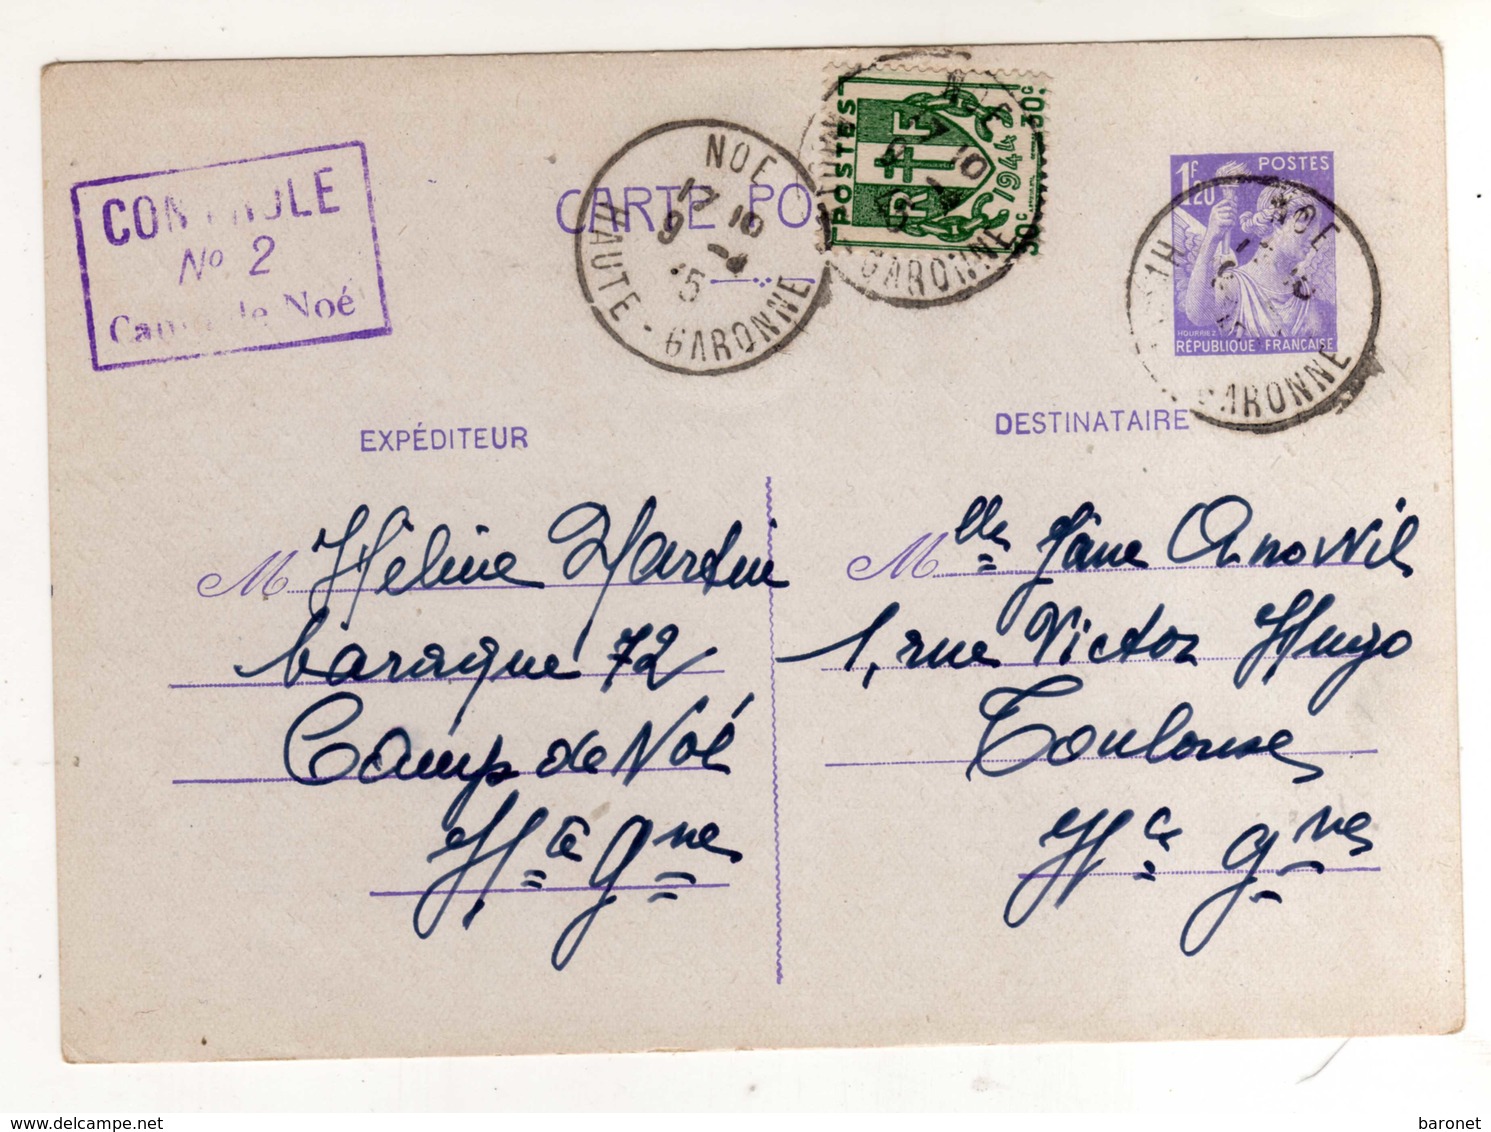 Entier Postal Iris 1f20 + 30c Chaines Tad Noé 9 4 45 + Tampon Controle / N° 2 / Camp De Noé - WW II